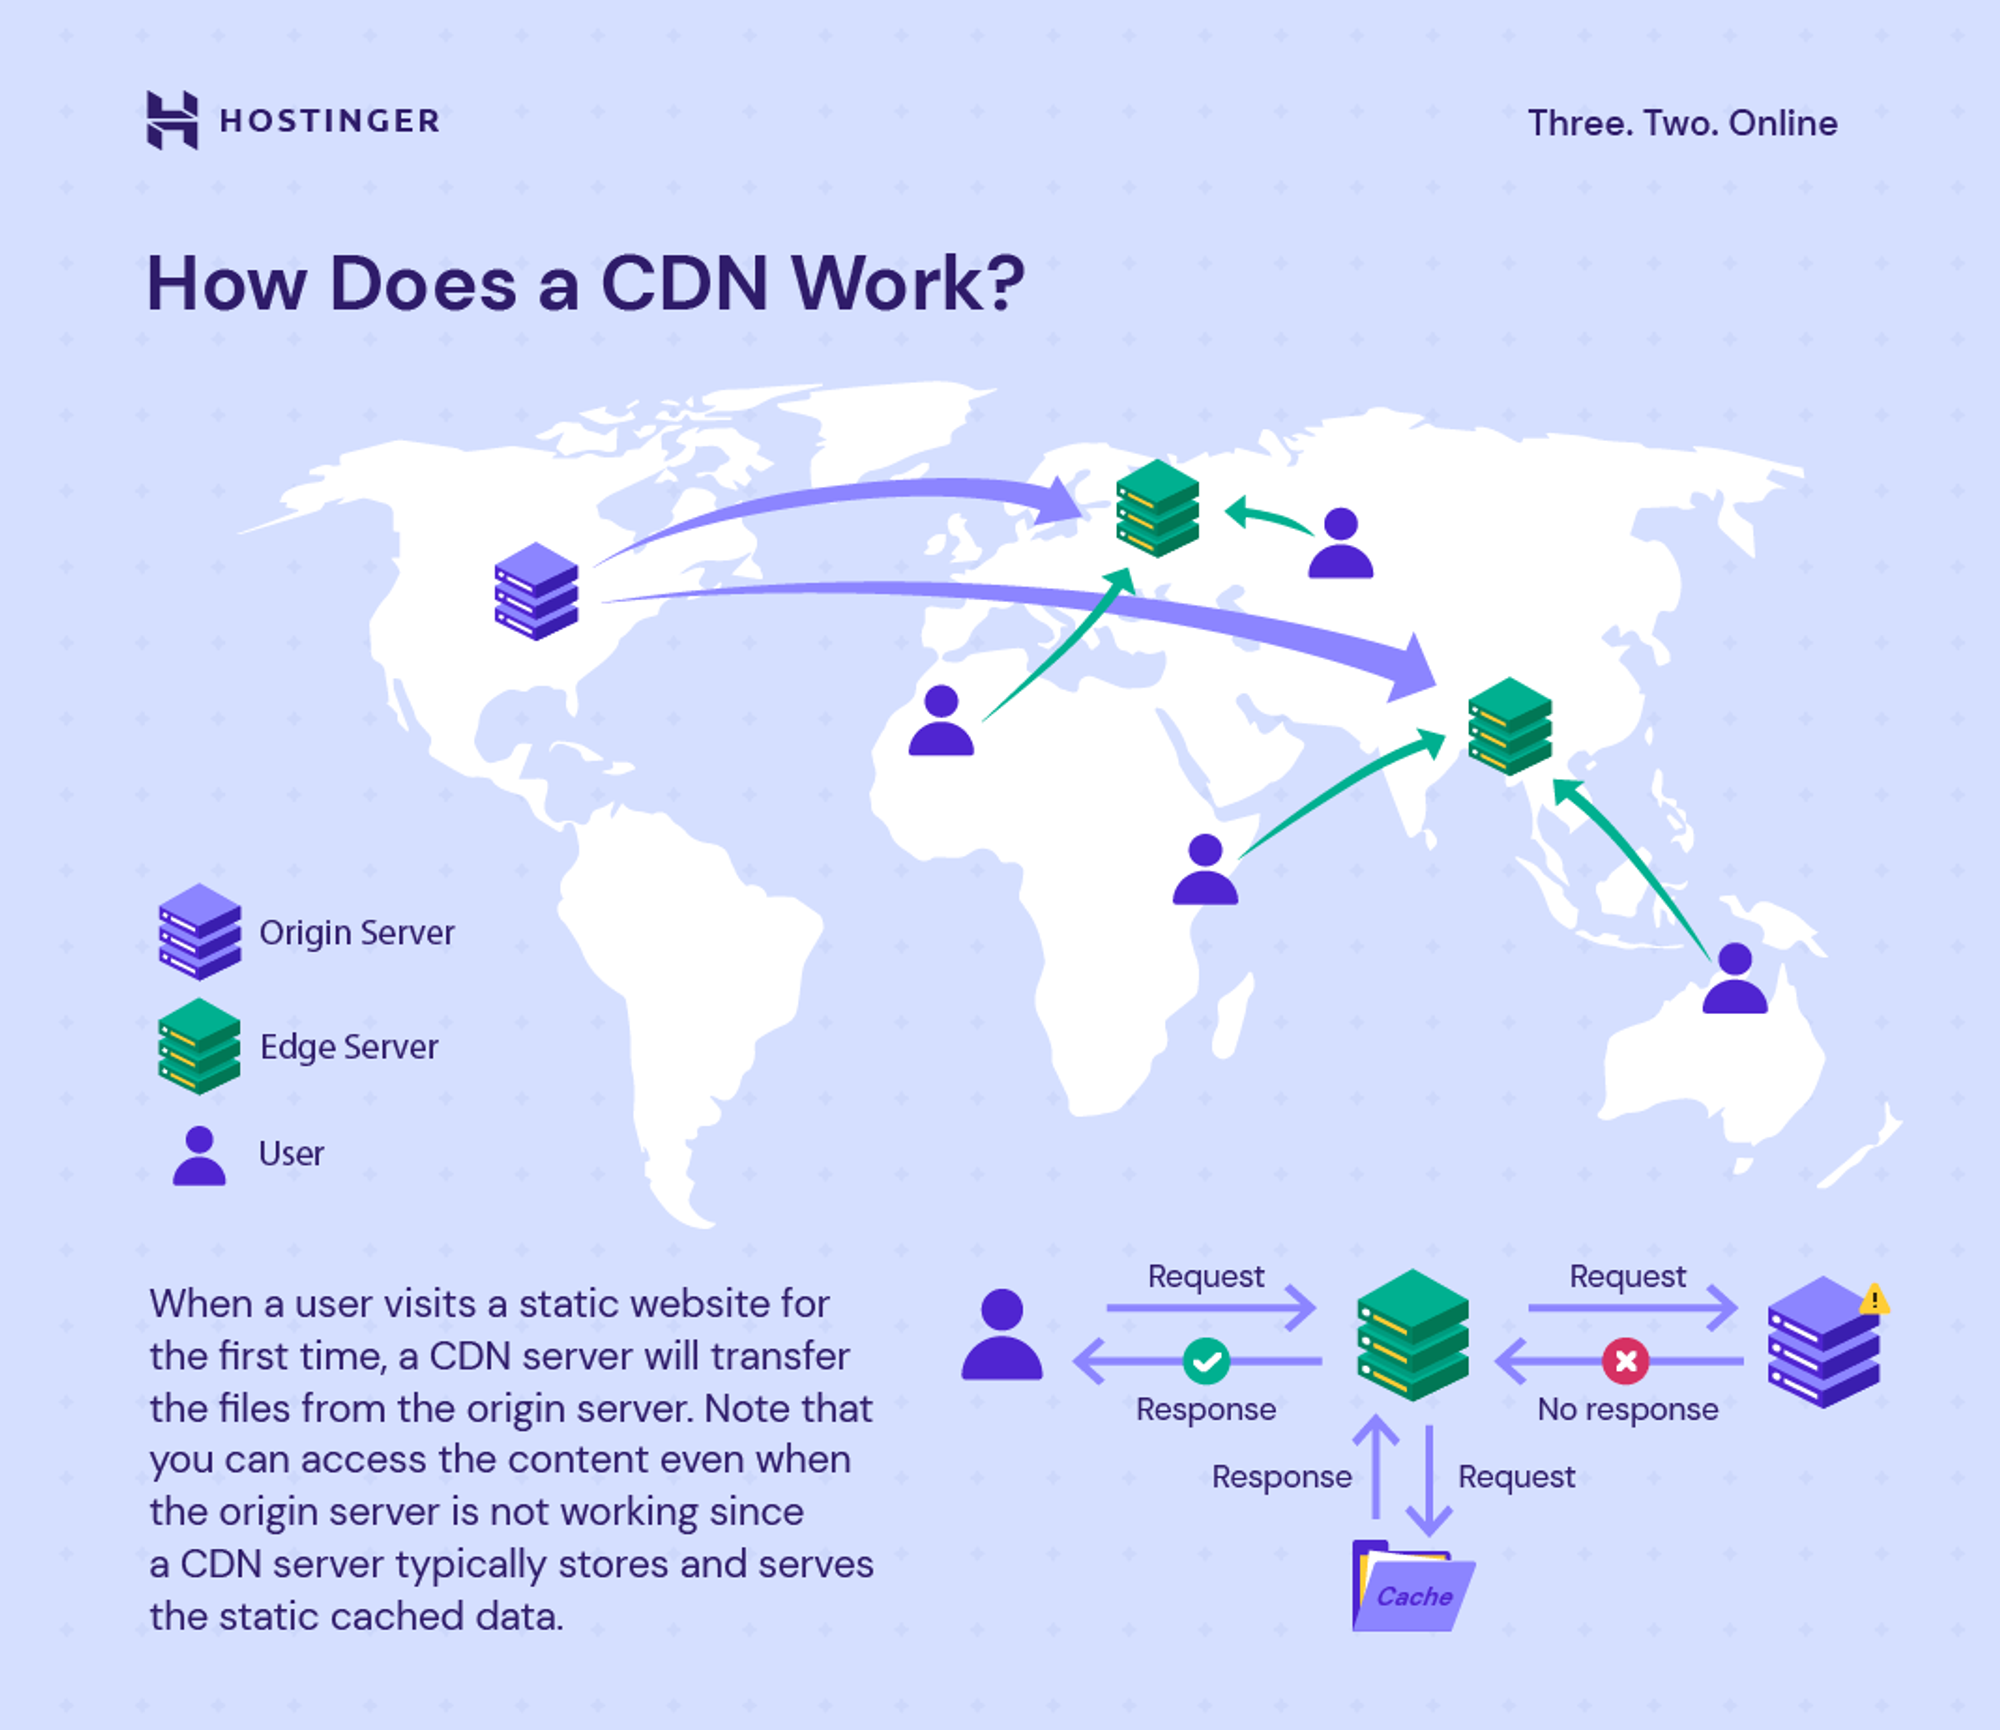 How a CDN works